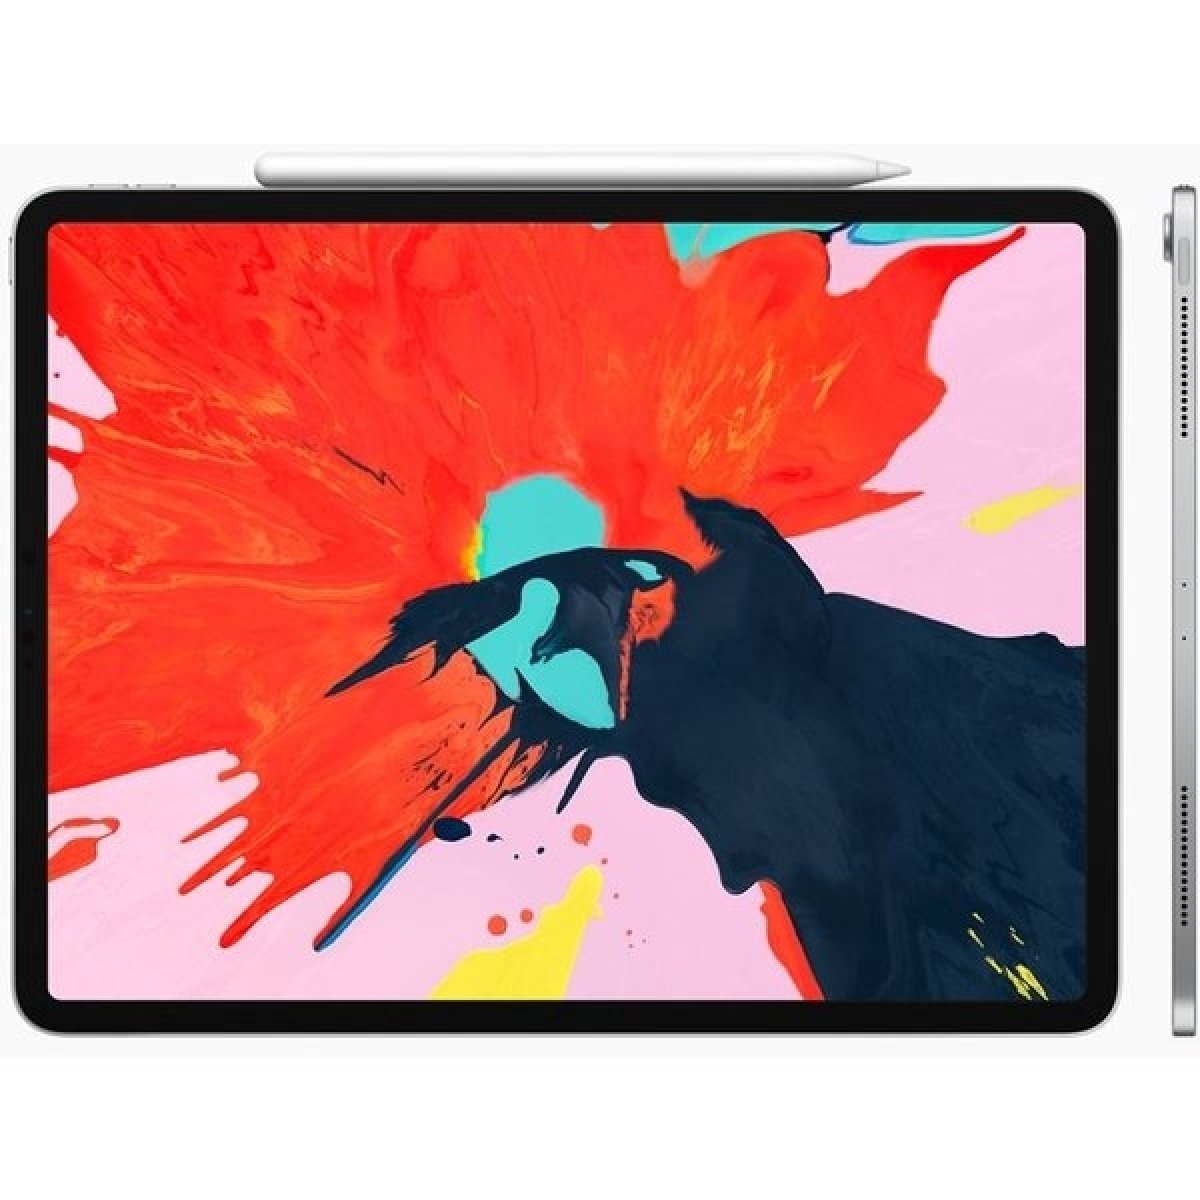 Apple iPad Pro 11 (2018) Wi-Fi 256GB Space Gray MTXQ2FD/A od 800,86 € -  Heureka.sk